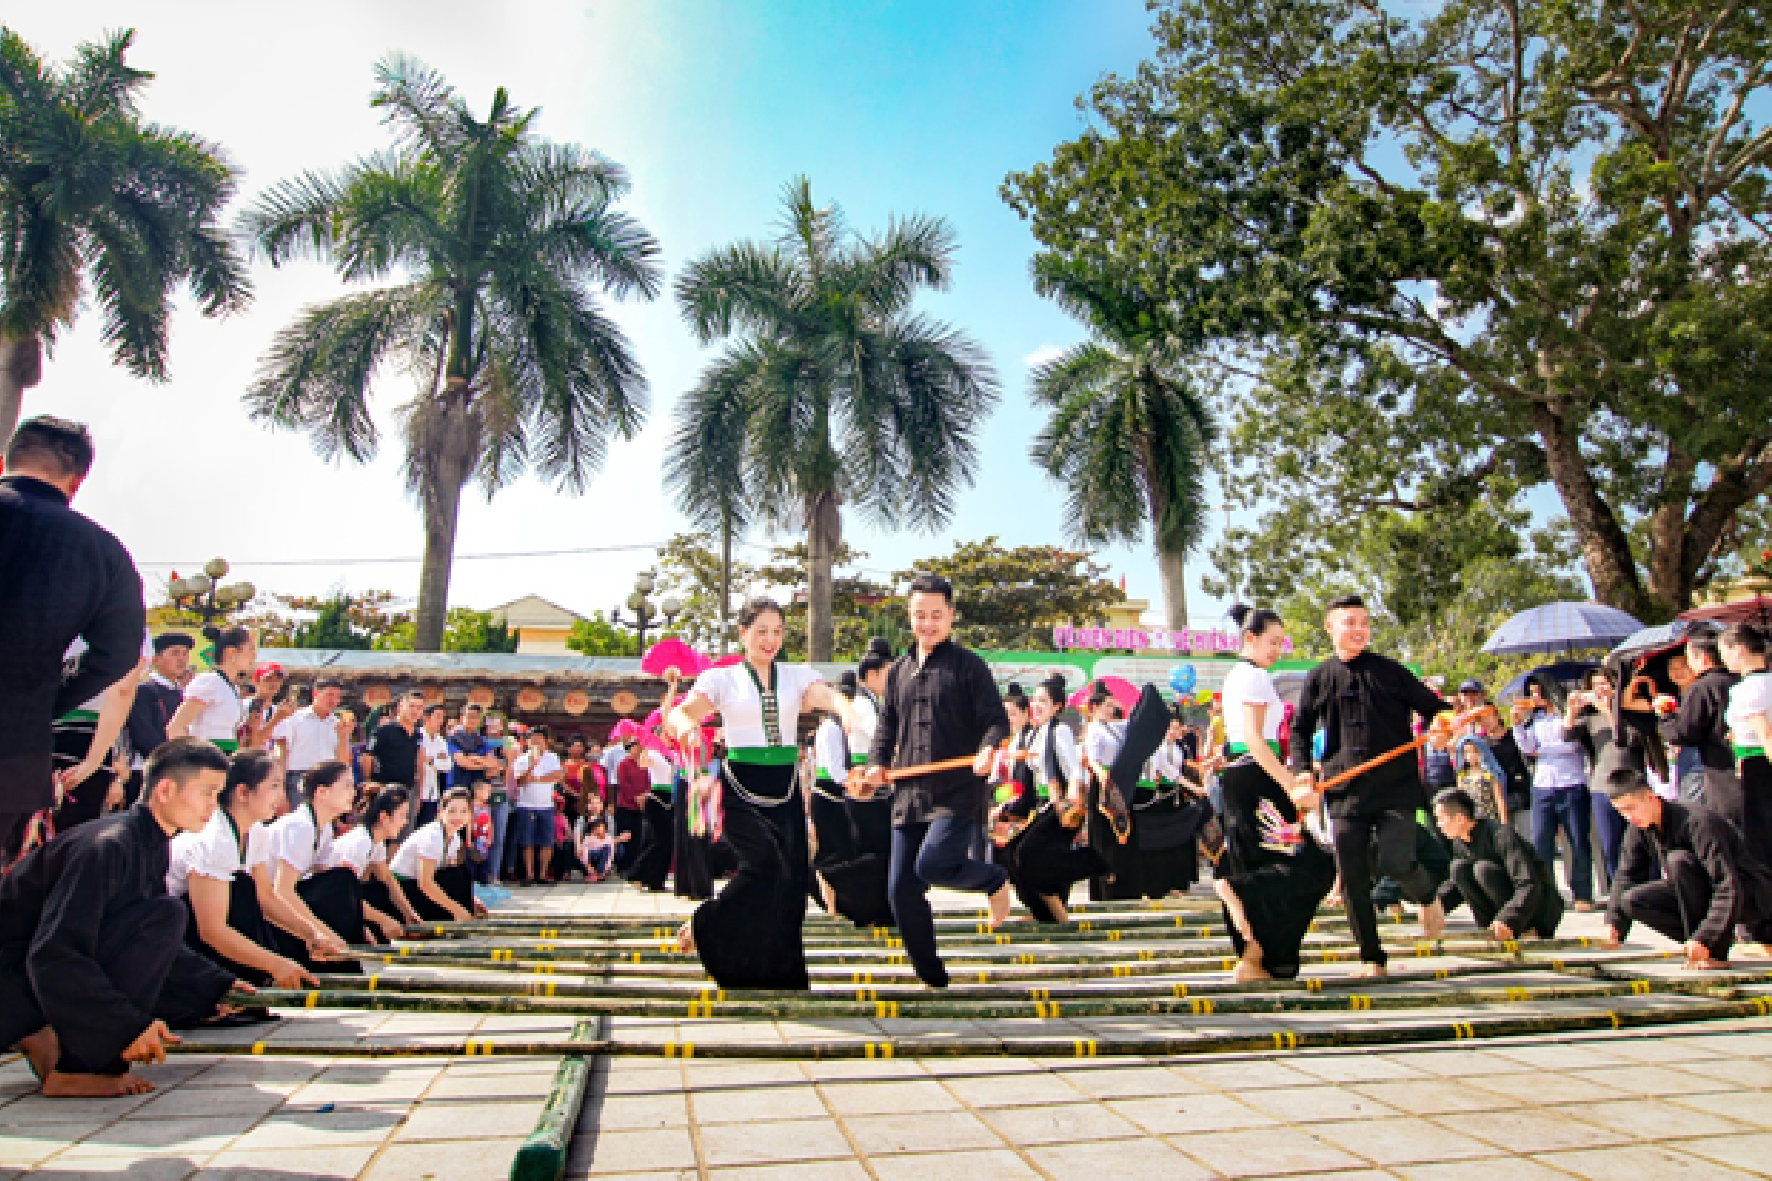 Sắp diễn ra Ngày hội văn hóa, thể thao và du lịch các dân tộc tỉnh Điện Biên